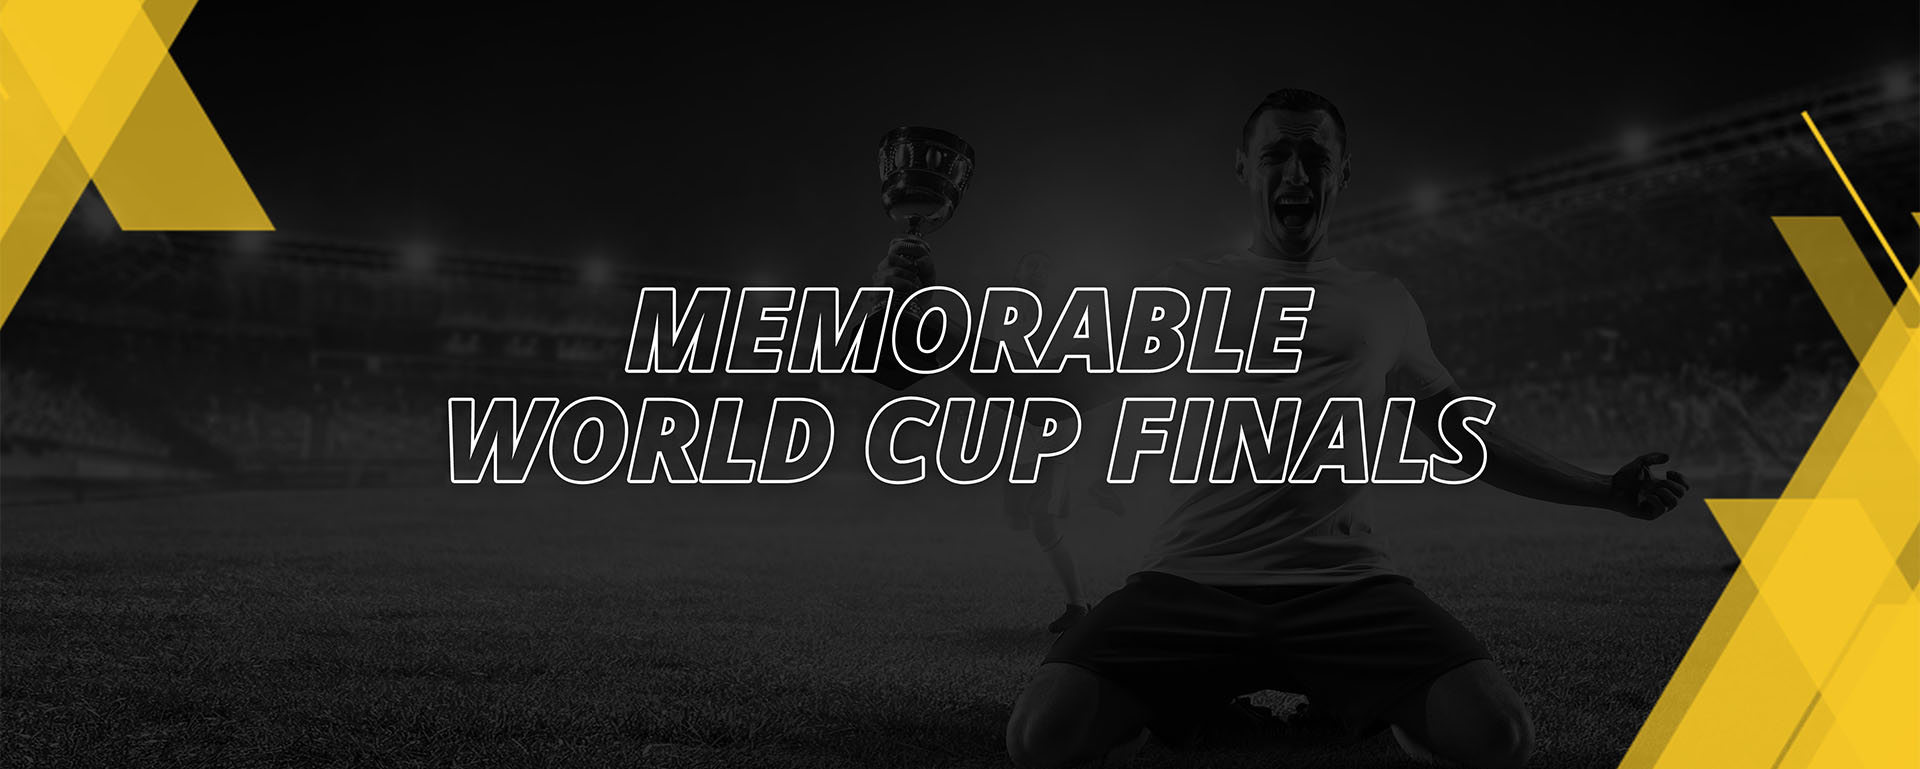 MEMORABLE FIFA WORLD CUP FINALS